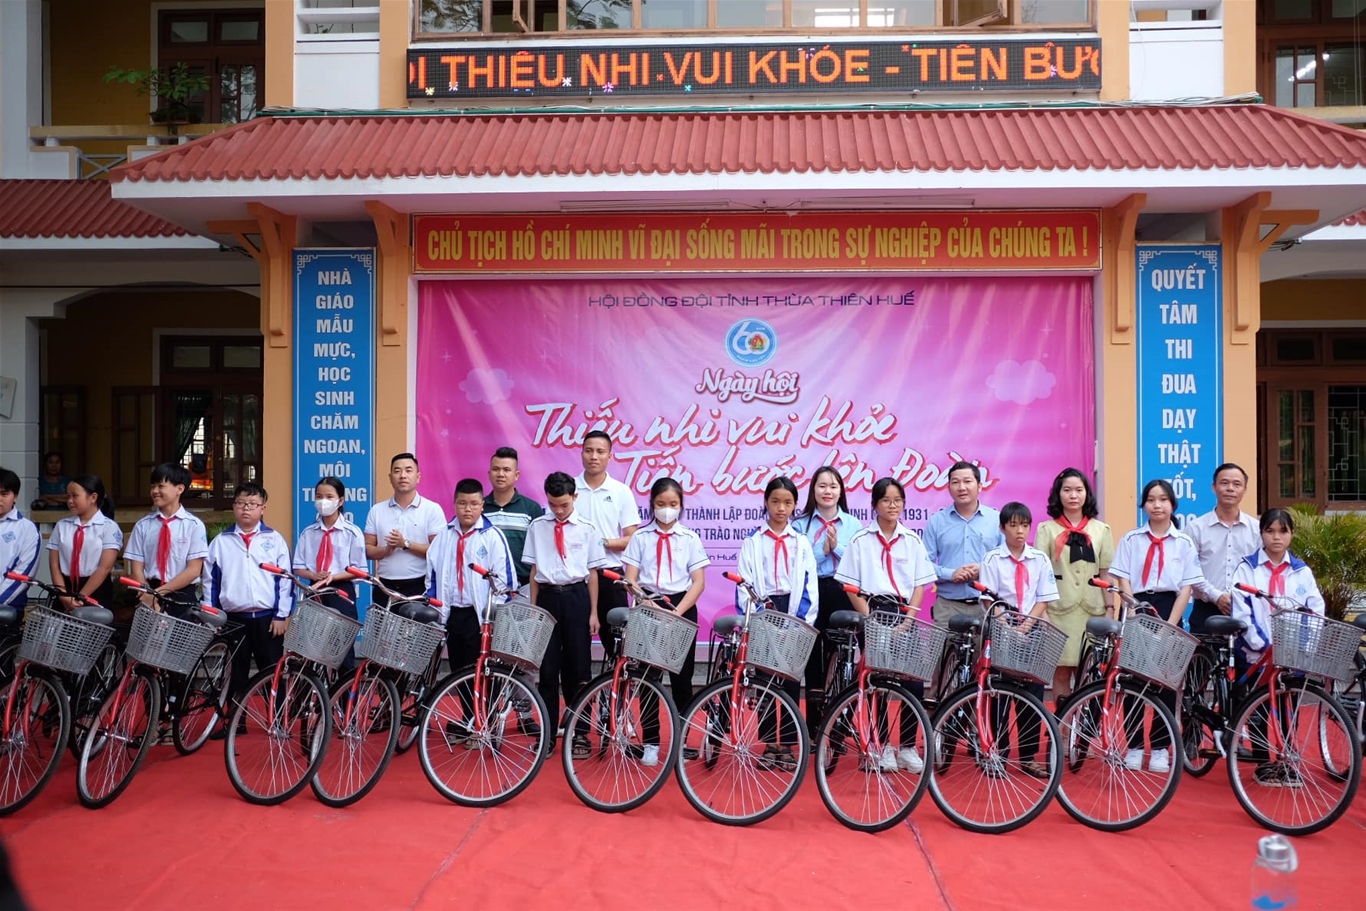 Tỉnh Đoàn - Hiệp hội Bất động sản Thừa Thiên Huế trao tặng 15 xe đạp cho 15 em học sinh có hoàn cảnh khó khăn